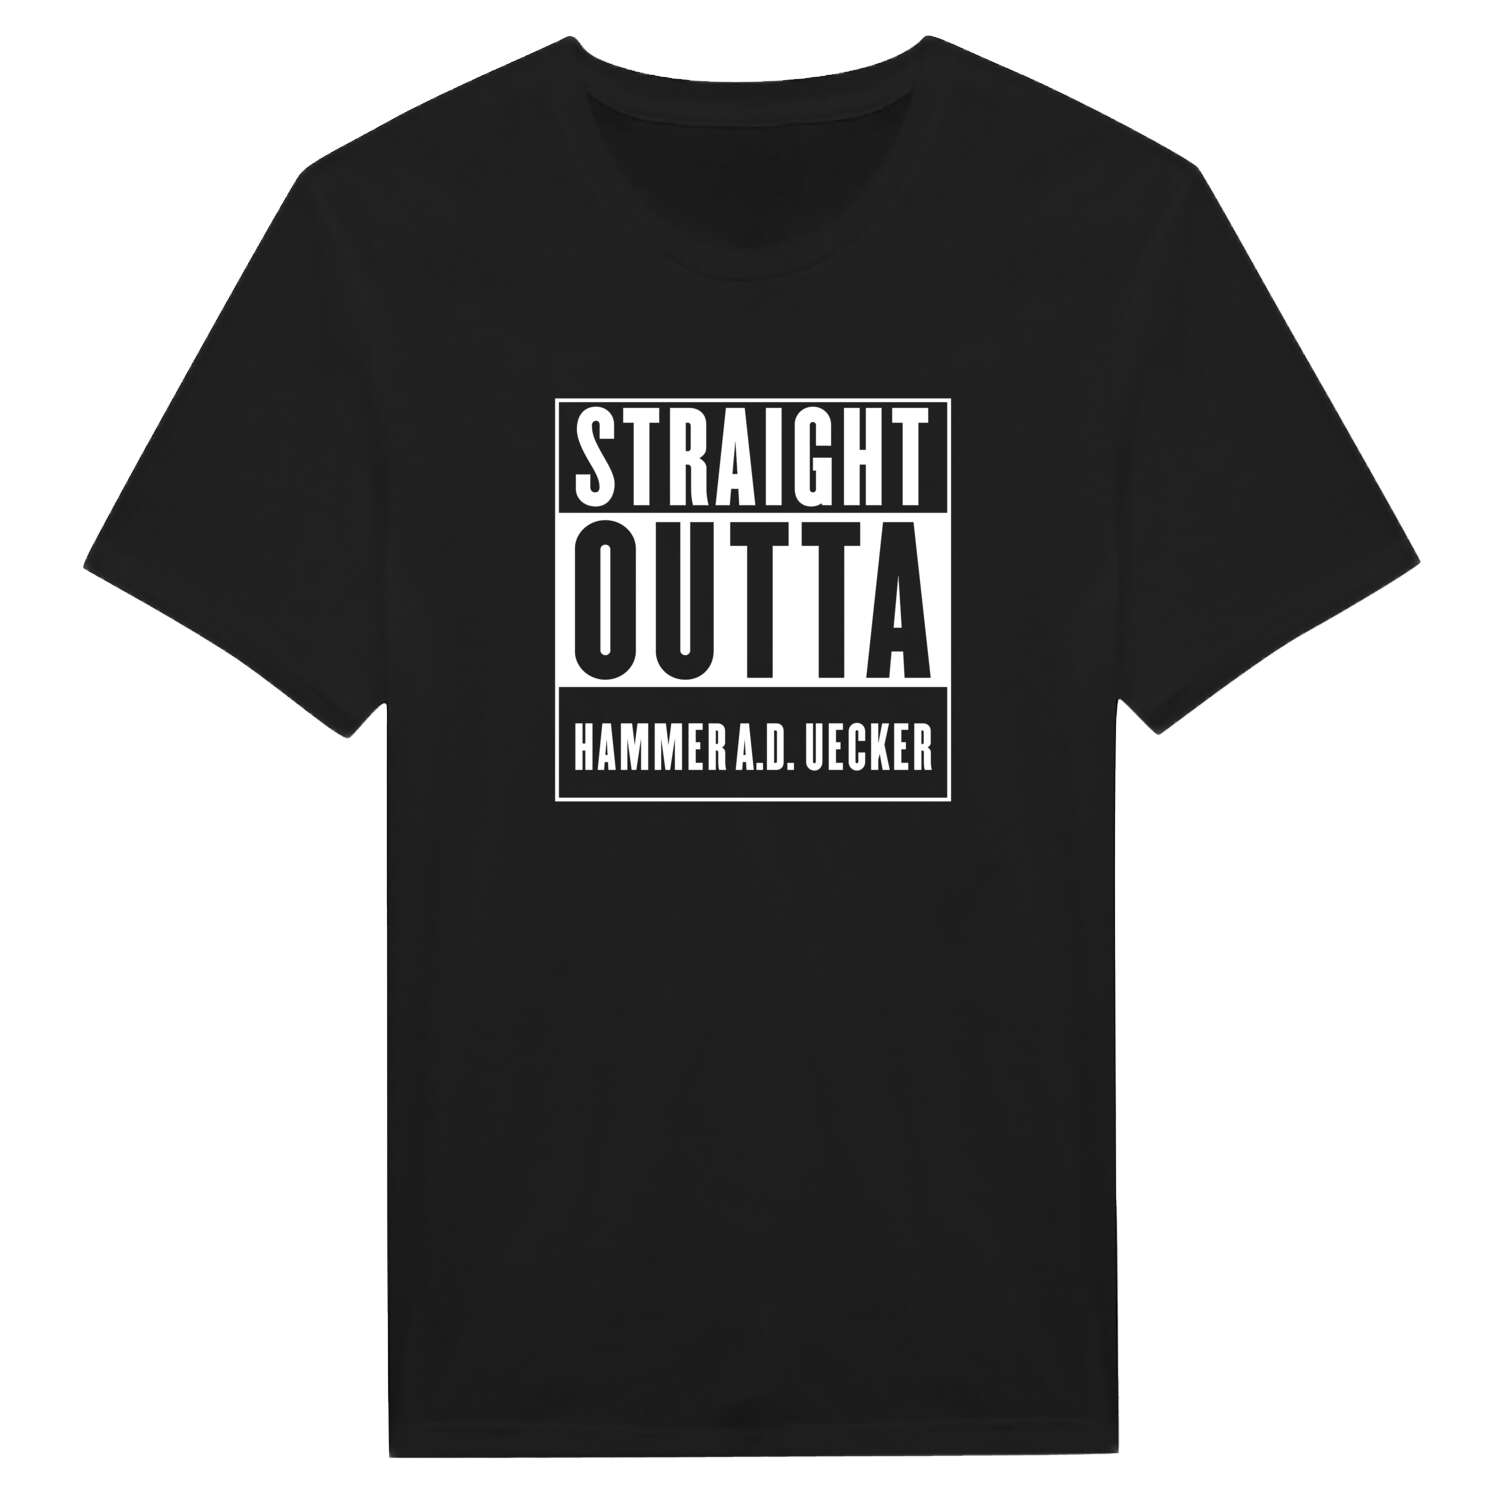 Hammer a.d. Uecker T-Shirt »Straight Outta«